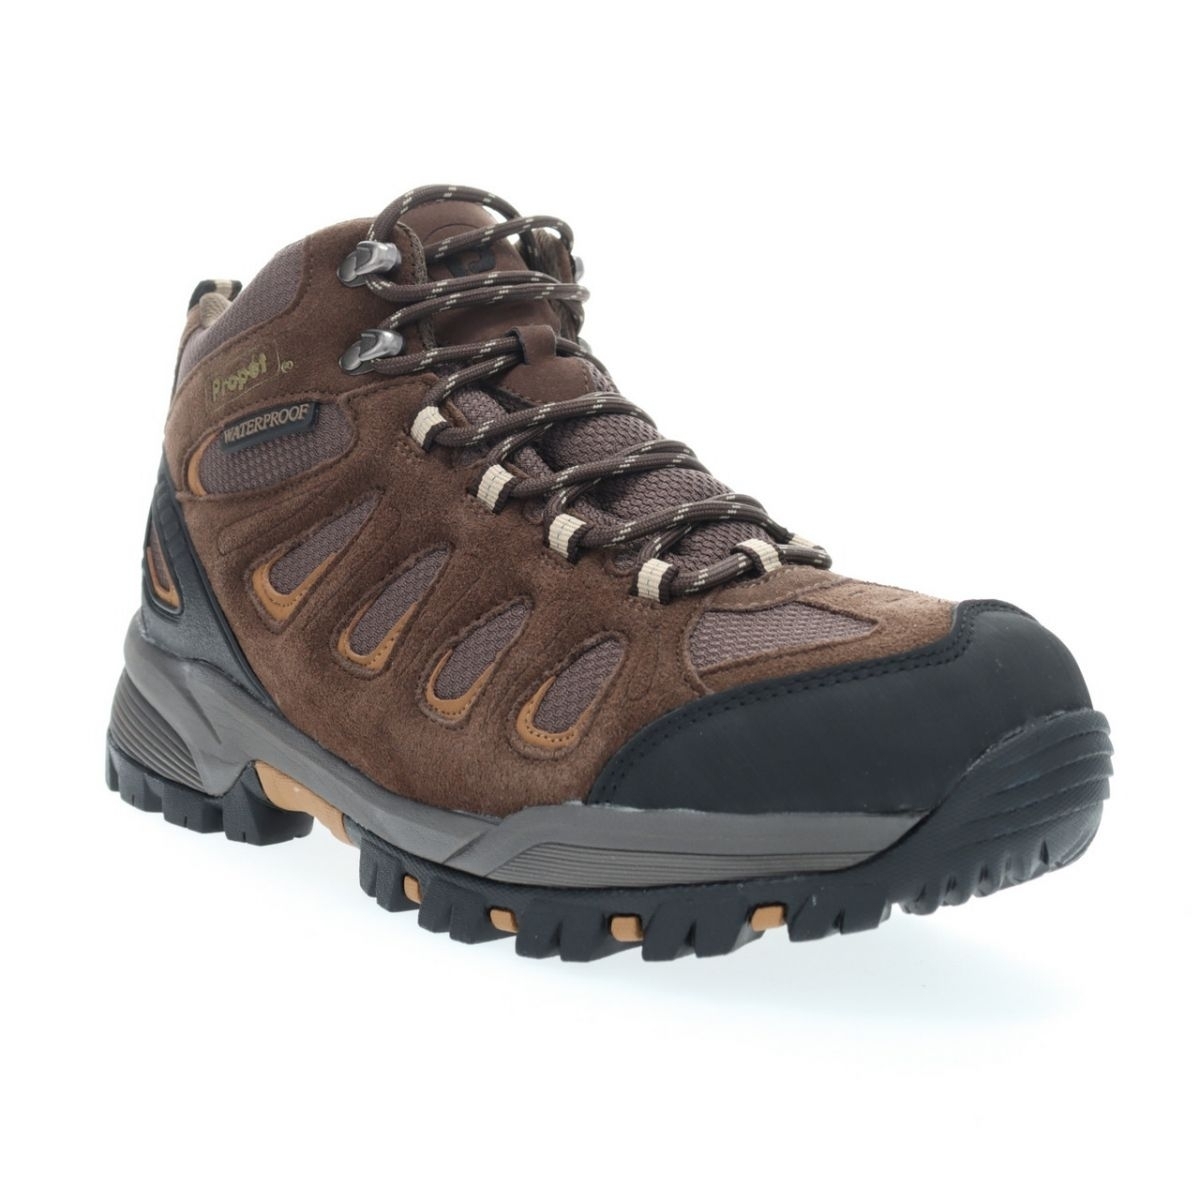 Propet Men's Ridge Walker Hiking Boot Brown - M3599BR 8 XX US Men BROWN - BROWN, 9 Wide